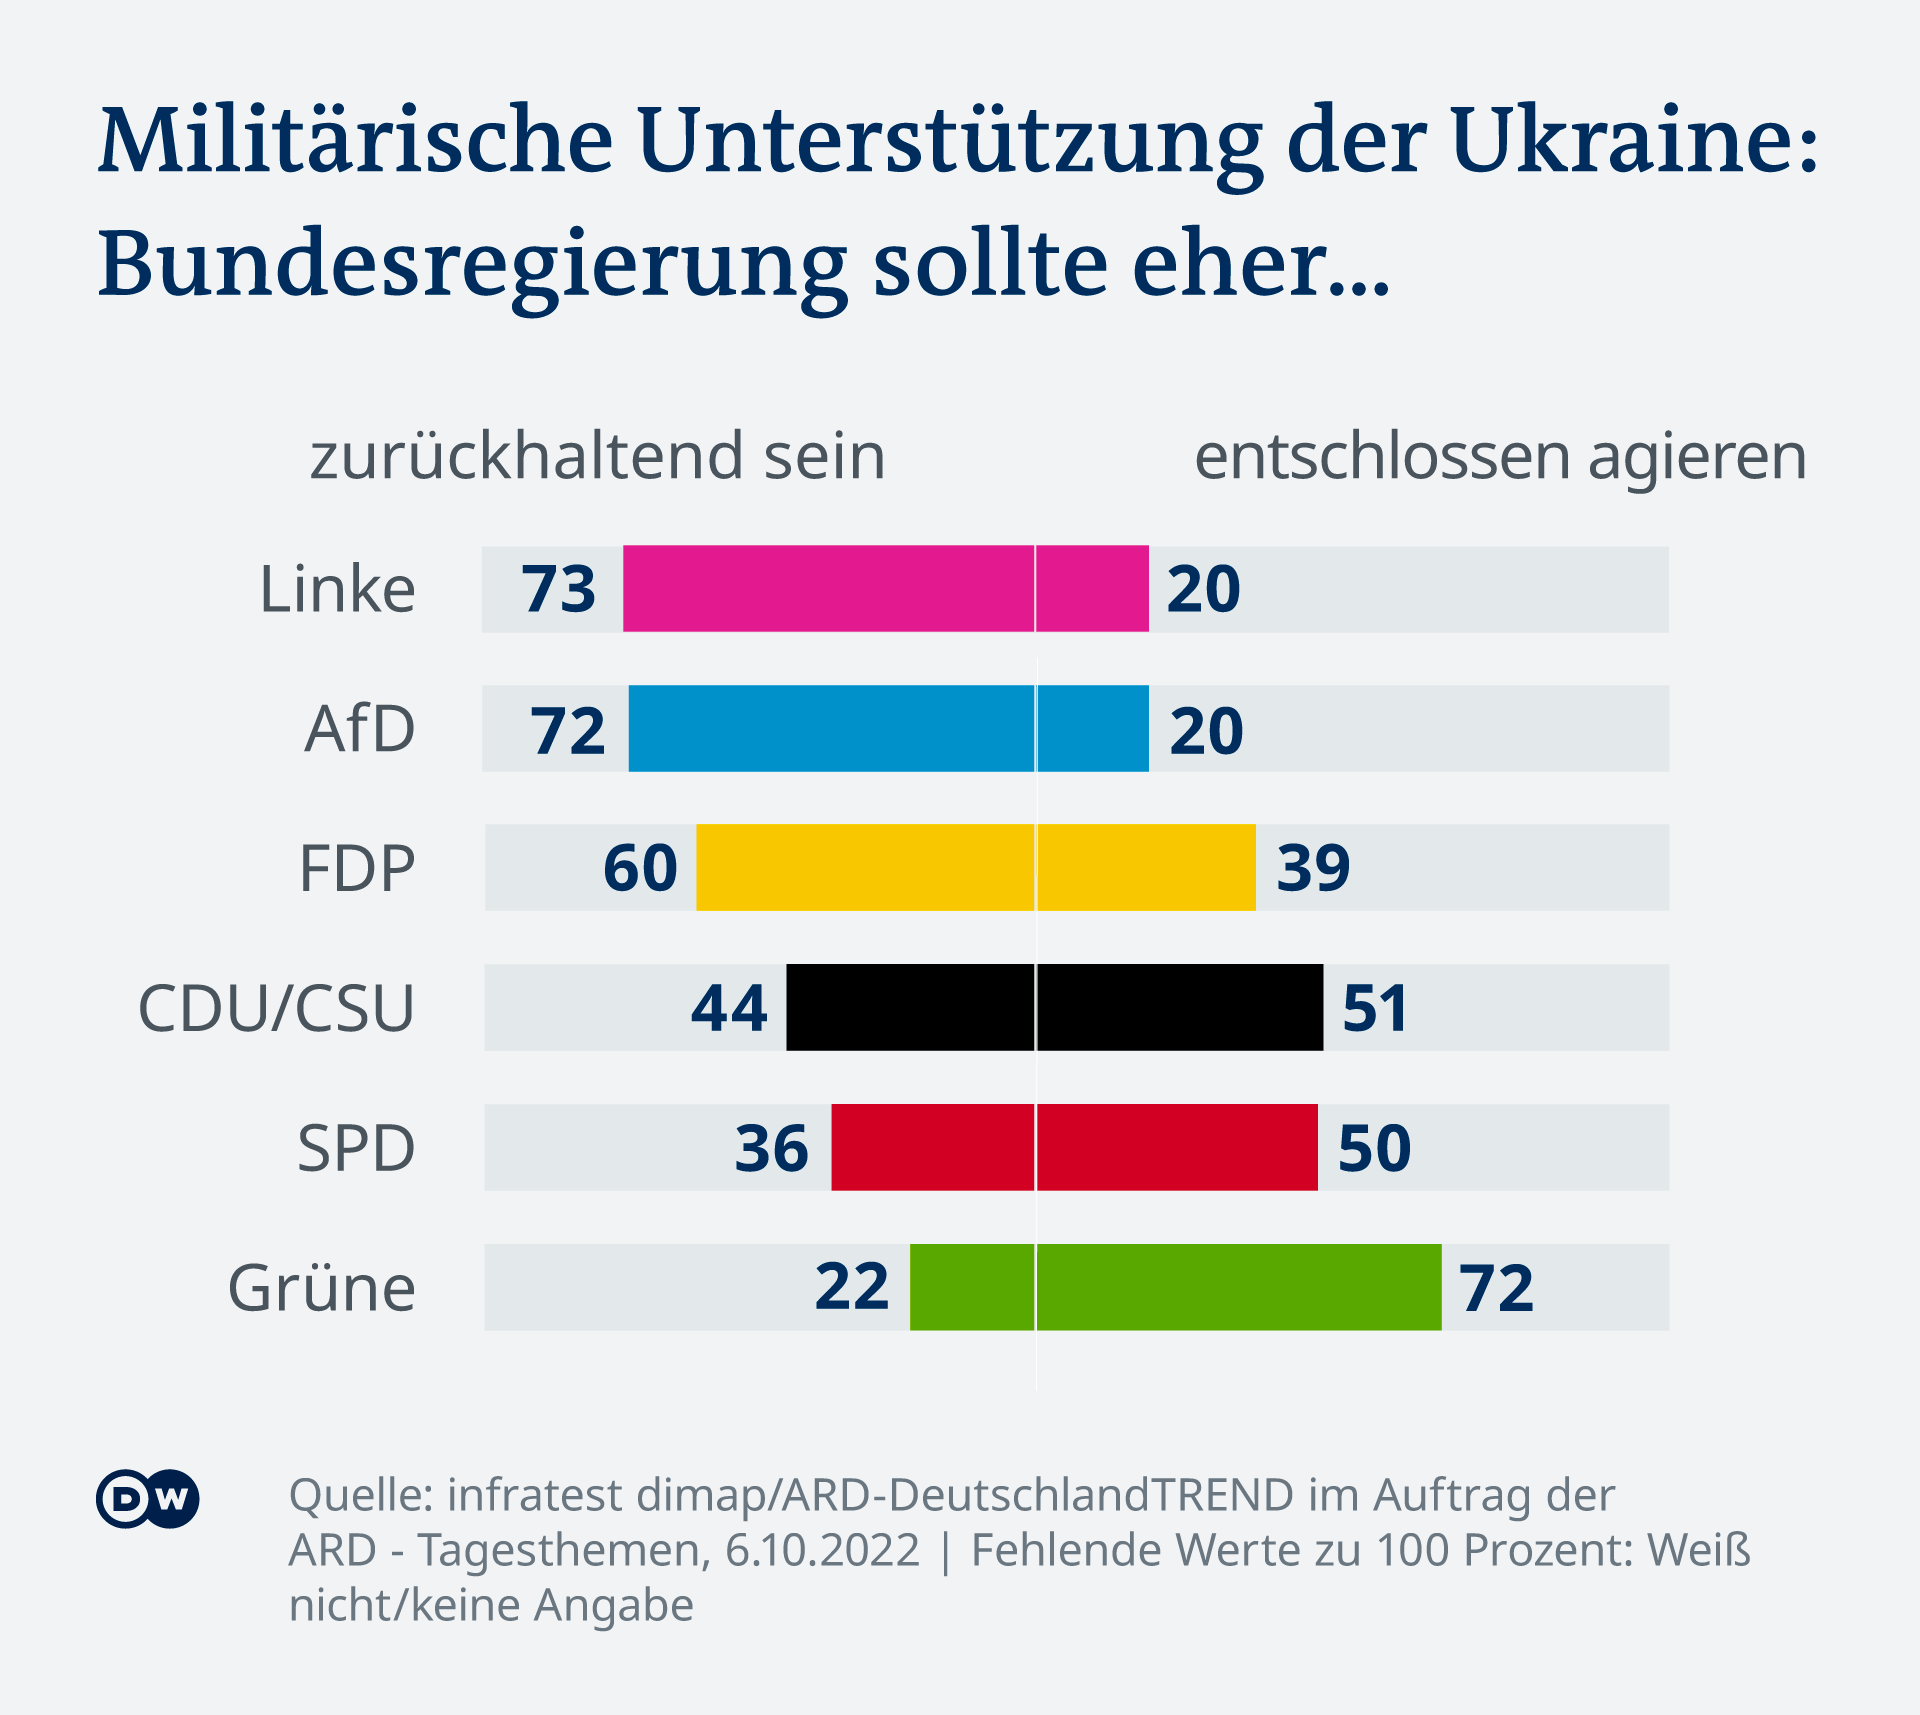 Die Grafik zeigt, wie die jeweiligen Parteianhänger die Frage nach zurückhaltender oder entschlossener Haltung Deutschlands bei der militärischen Unterstützung der Ukraine beantworten. Angaben in Prozentpunkten: Linke 73/20, AfD 72/20, FDP 60/39, CDU/CSU 44/51, SPD 36/50, Grüne 22/72